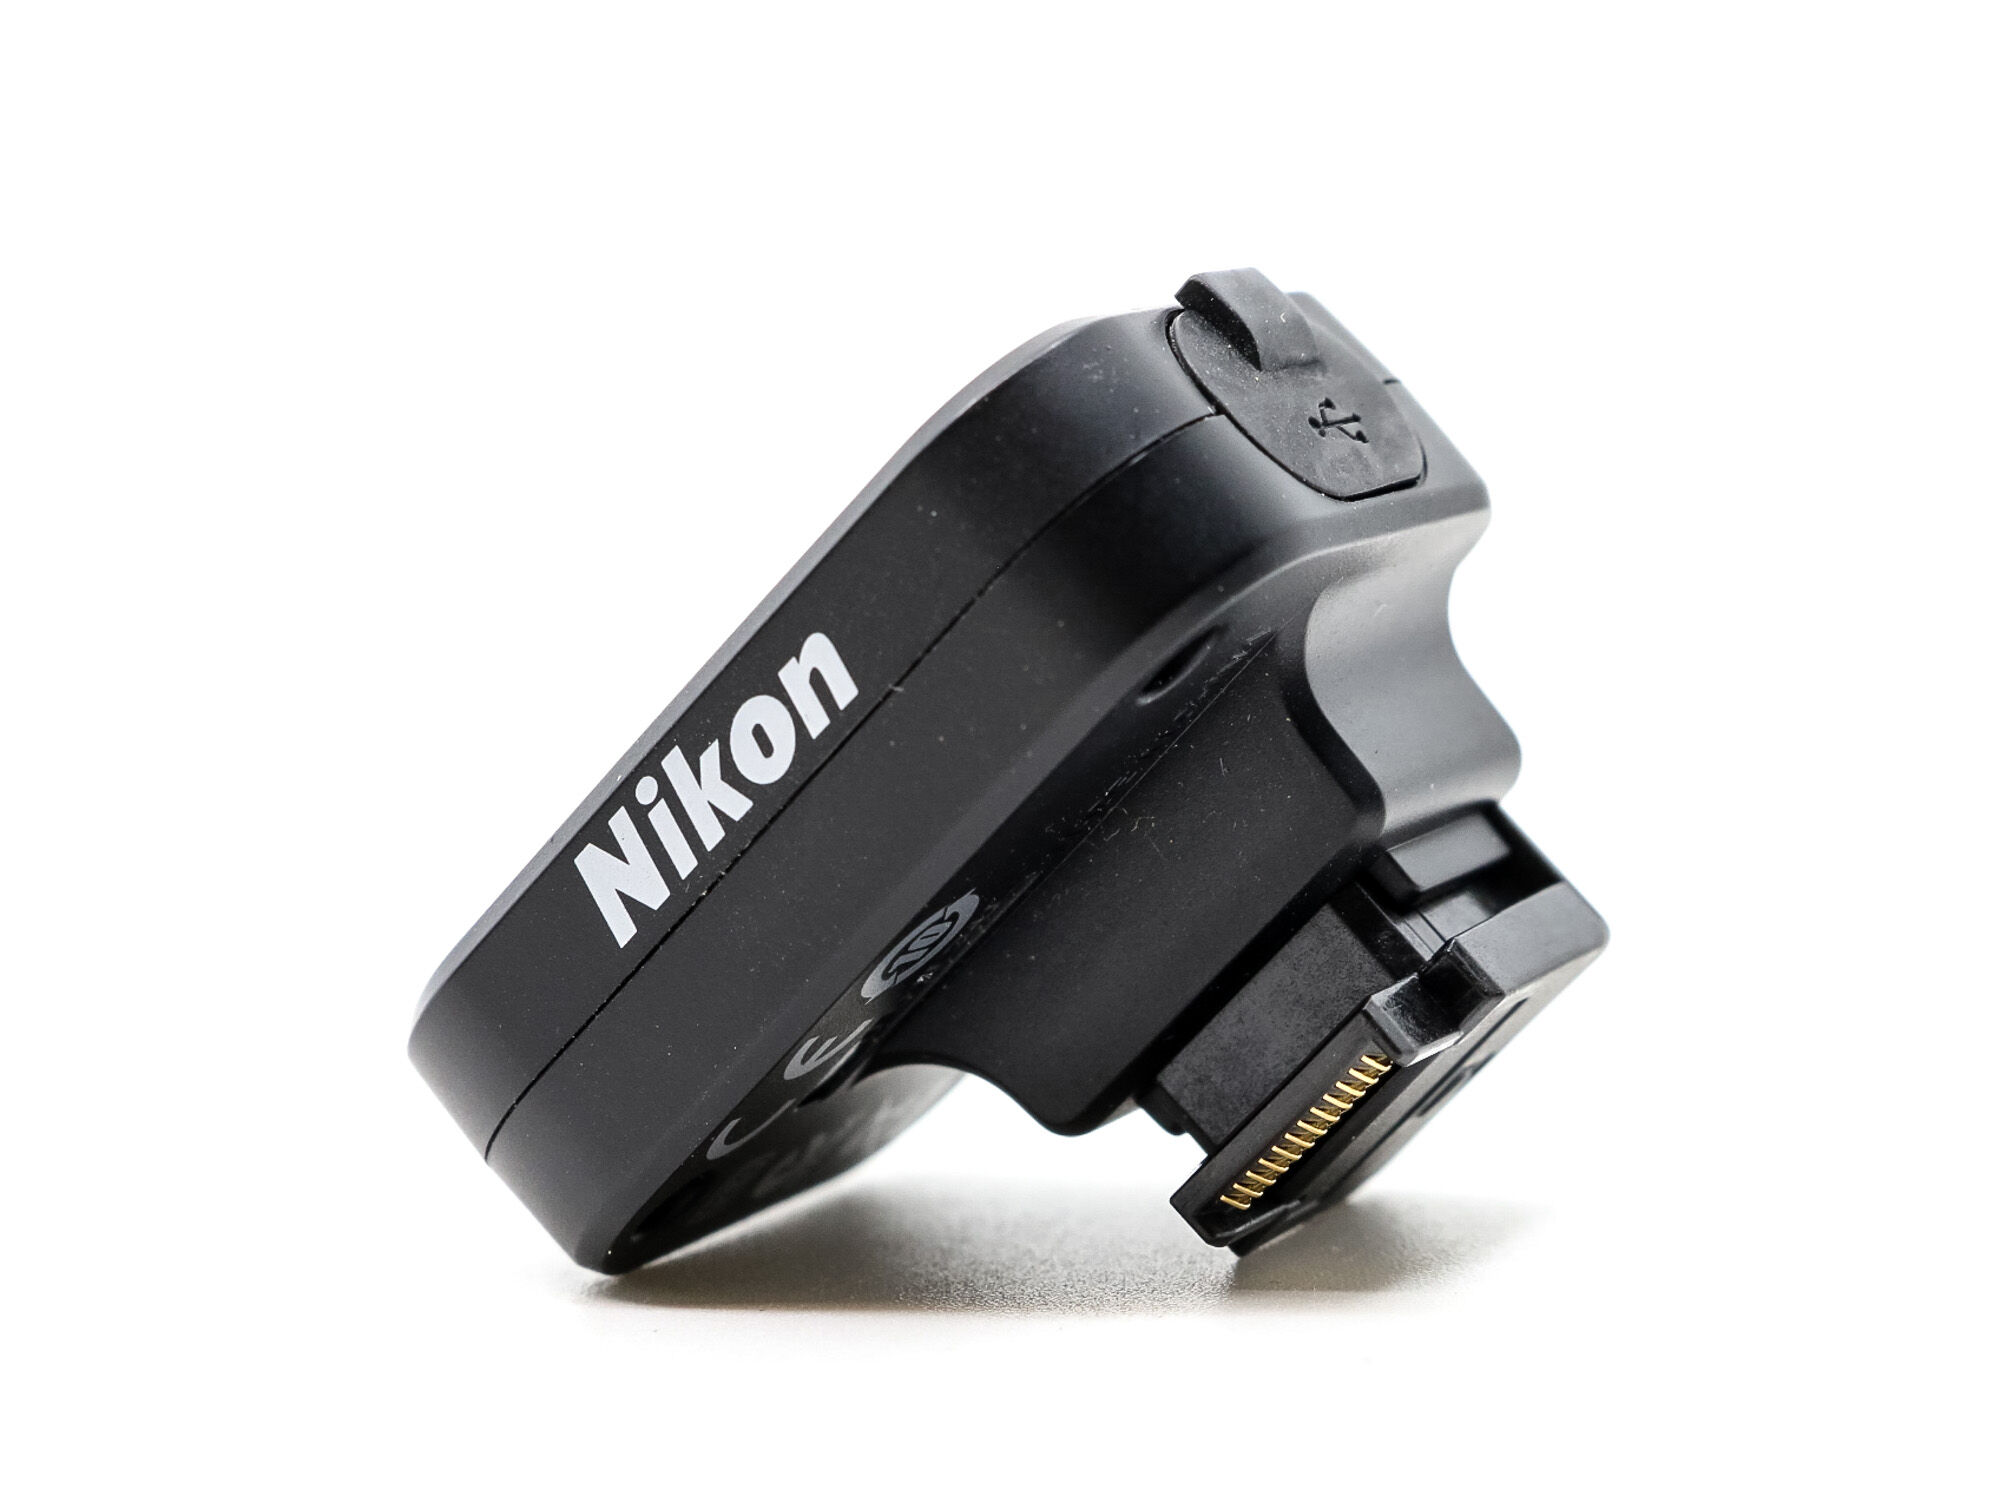 Nikon GP-N 100 GPS Unit (Condition: Excellent)